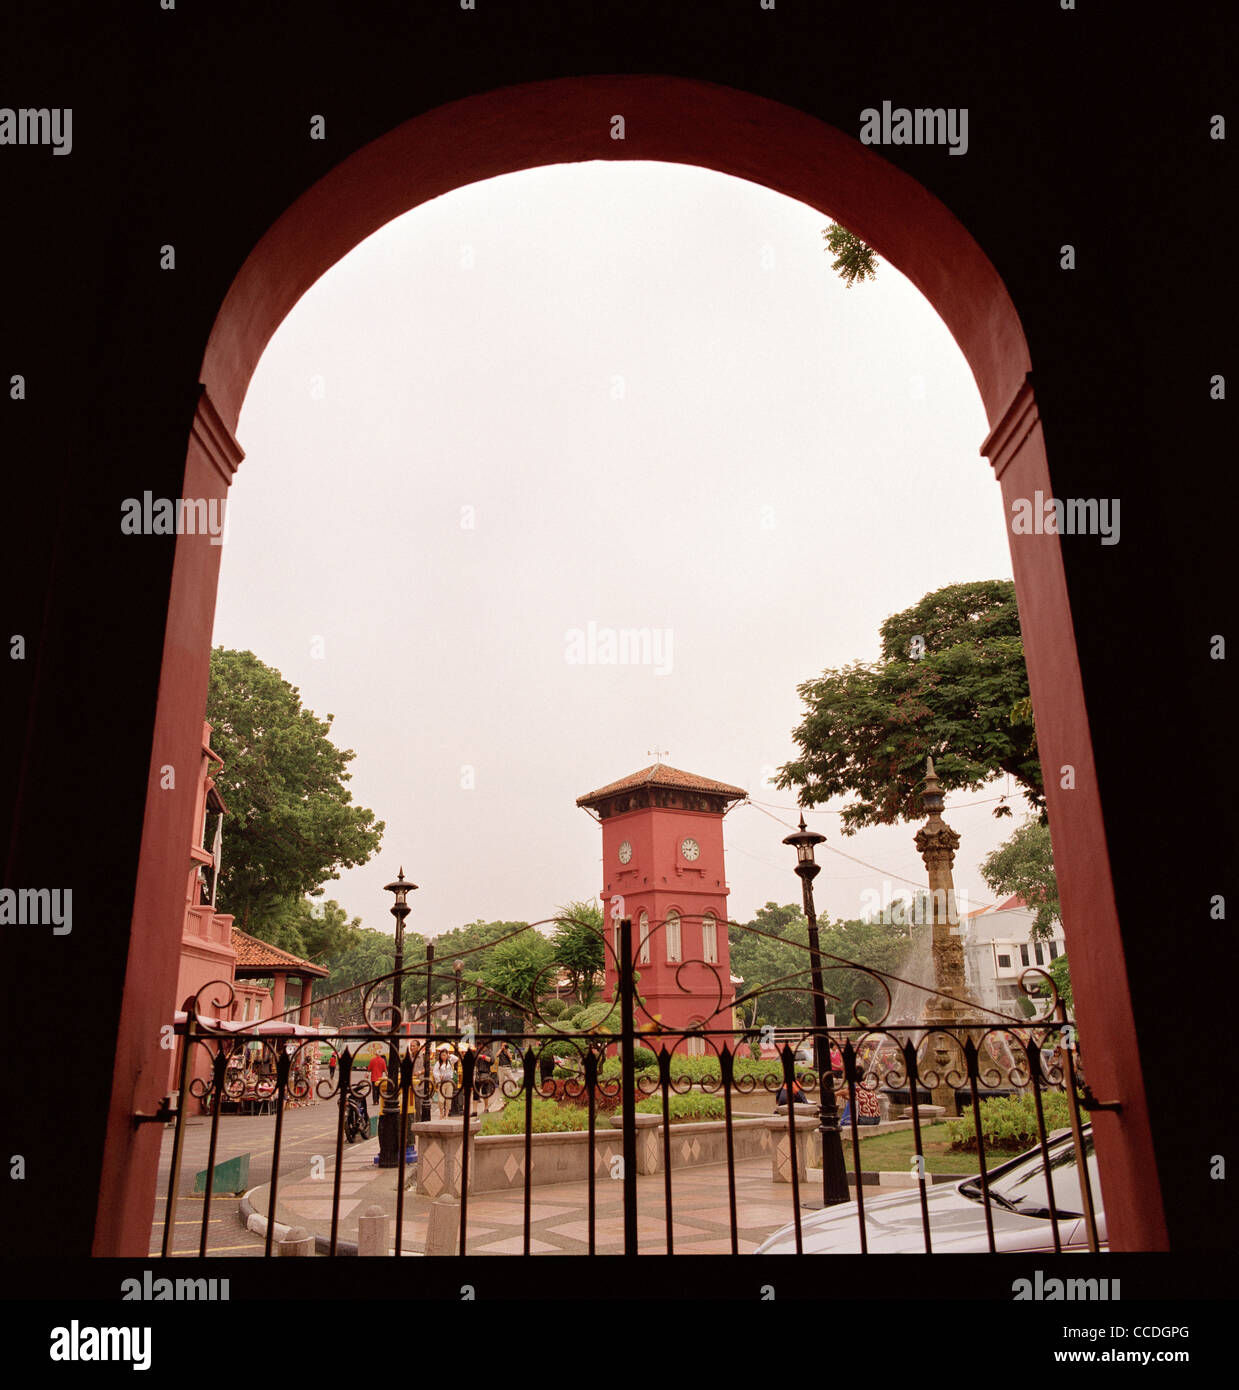 Tour de l'horloge à Dutch Square à Malacca Melaka en Malaisie en Extrême-Orient Asie du sud-est. Billet d Banque D'Images